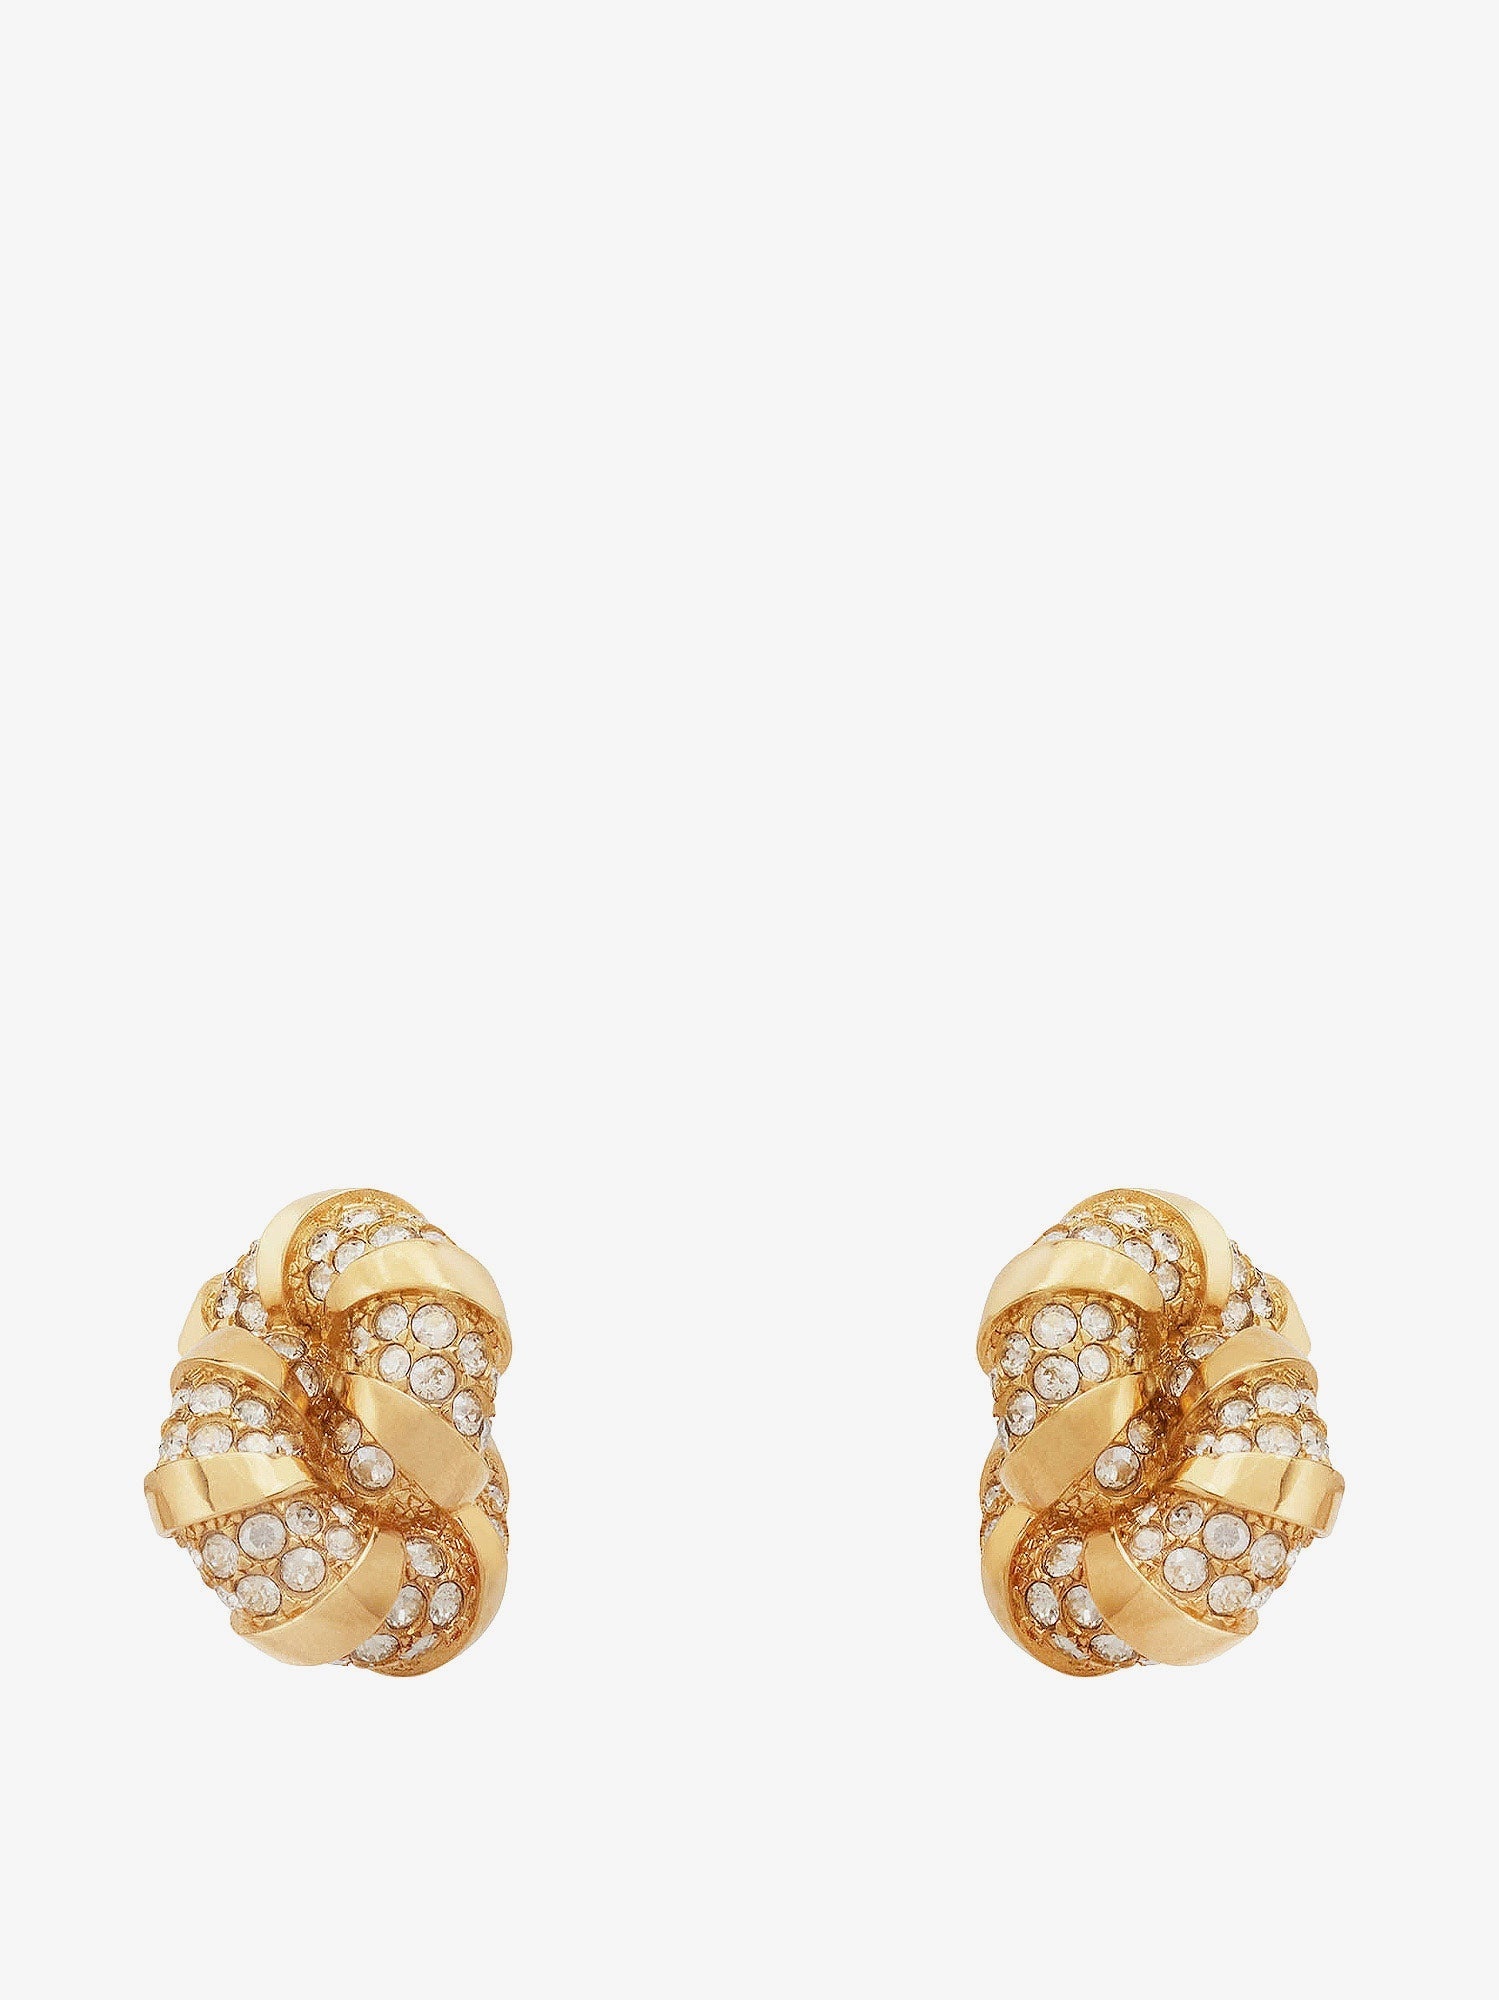 LANVIN PARIS Earrings Woman Gold Earrings - 1